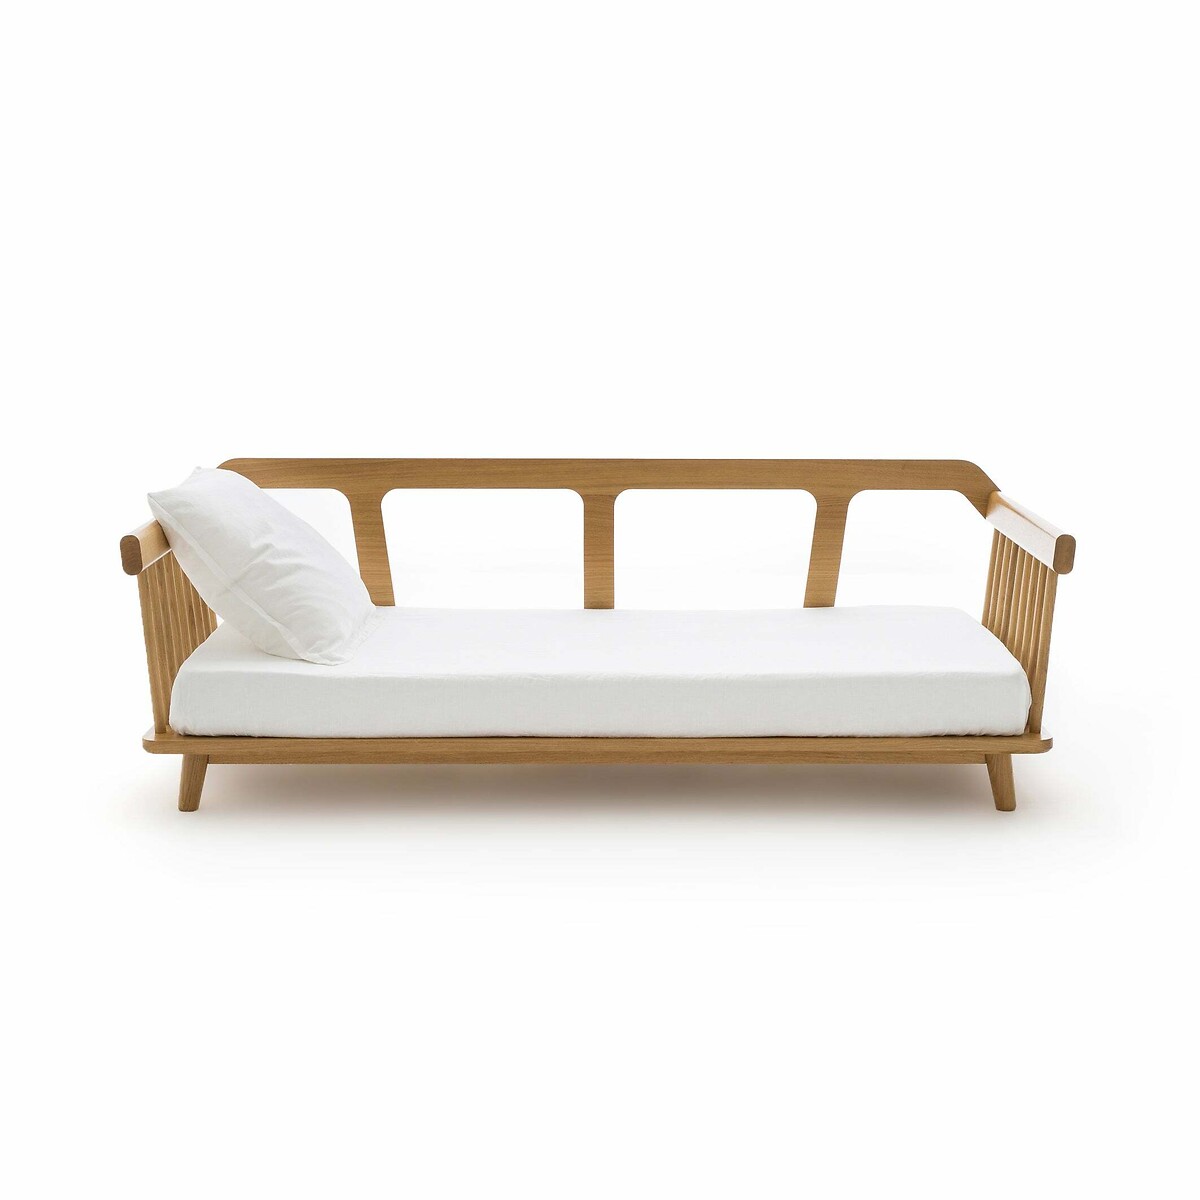 Кровать-банкетка Jungling дизайн Э Галлины 90 x 190 см каштановый